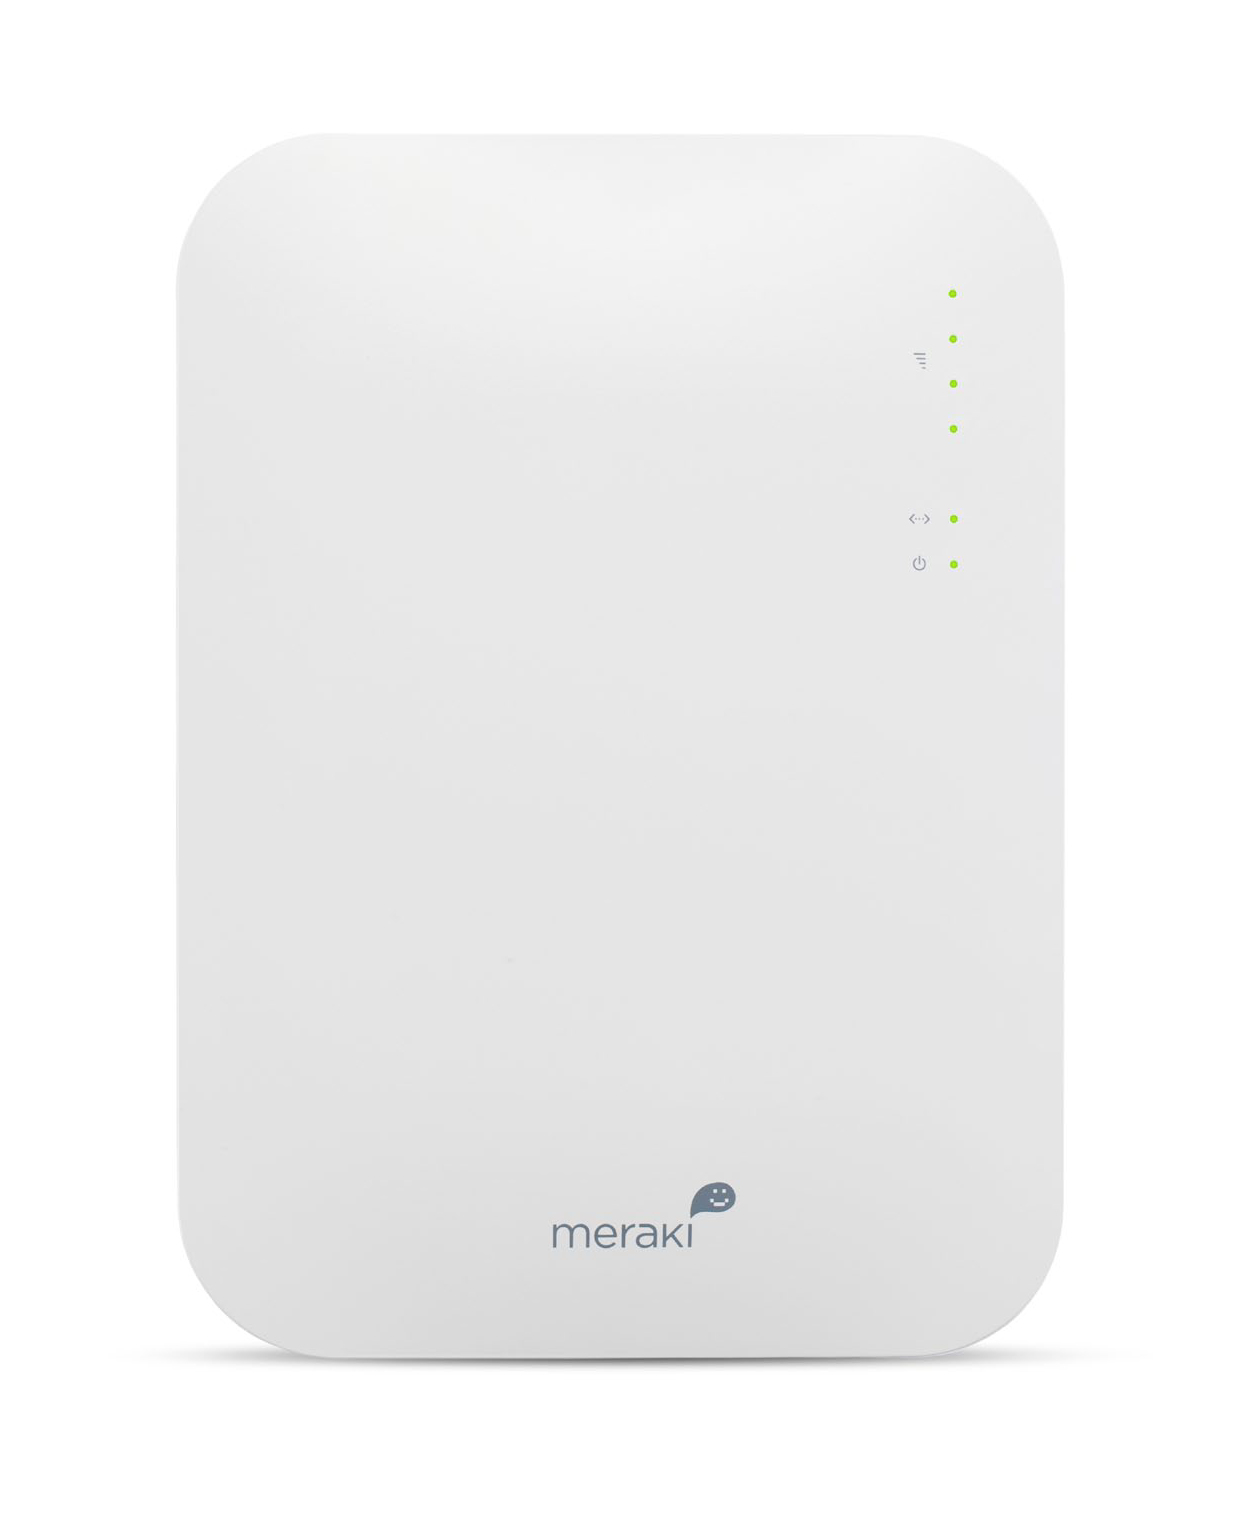 Cisco Meraki MR16 600 Mbit/s White Power over Ethernet (PoE)